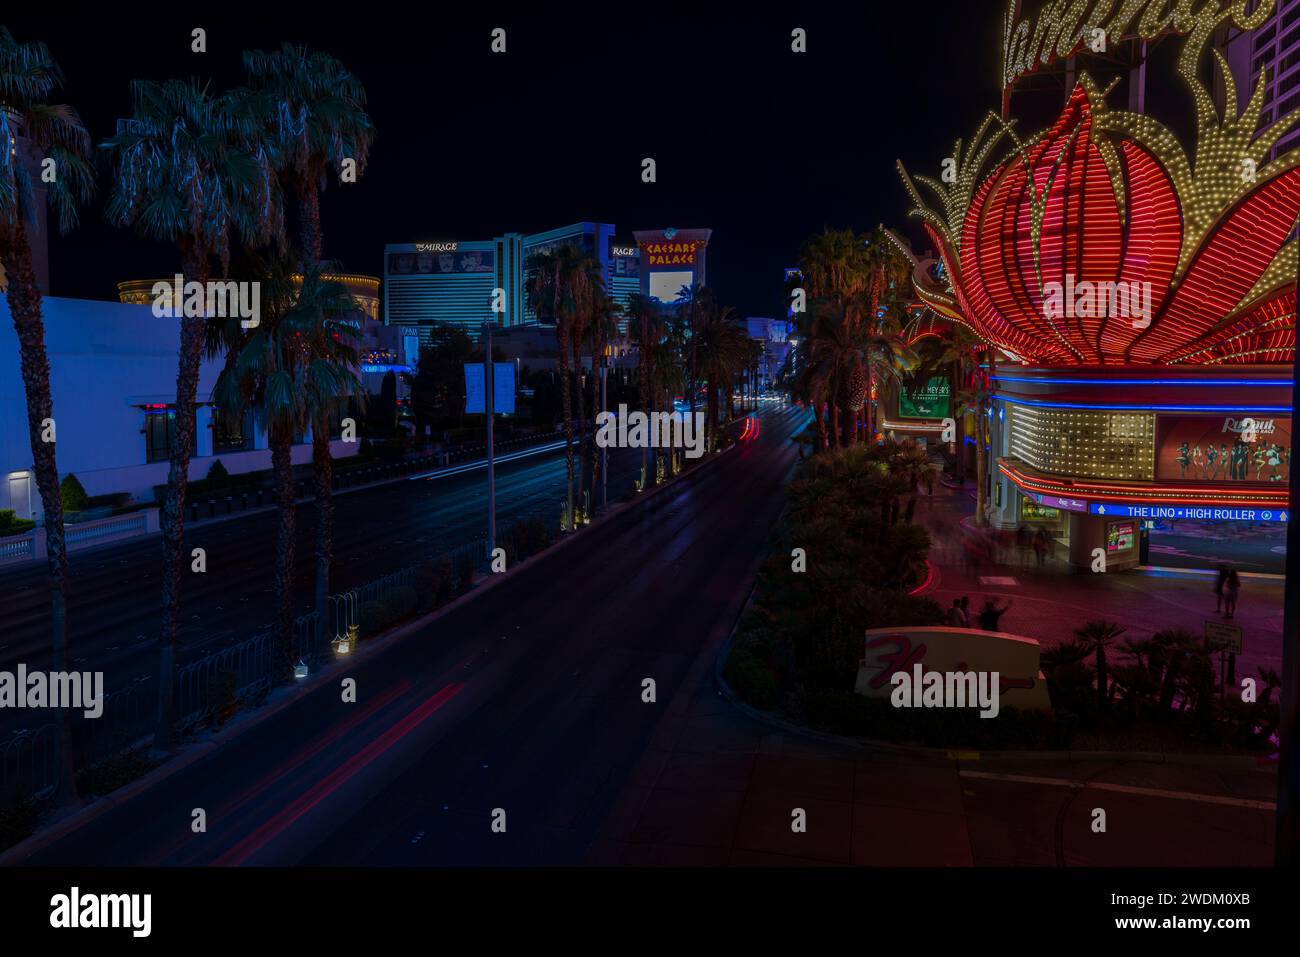 Belle vue nocturne sur le paysage urbain avec de superbes traces de lumière floue depuis les voitures sur le Strip de Las Vegas. Las Vegas. ÉTATS-UNIS. Banque D'Images